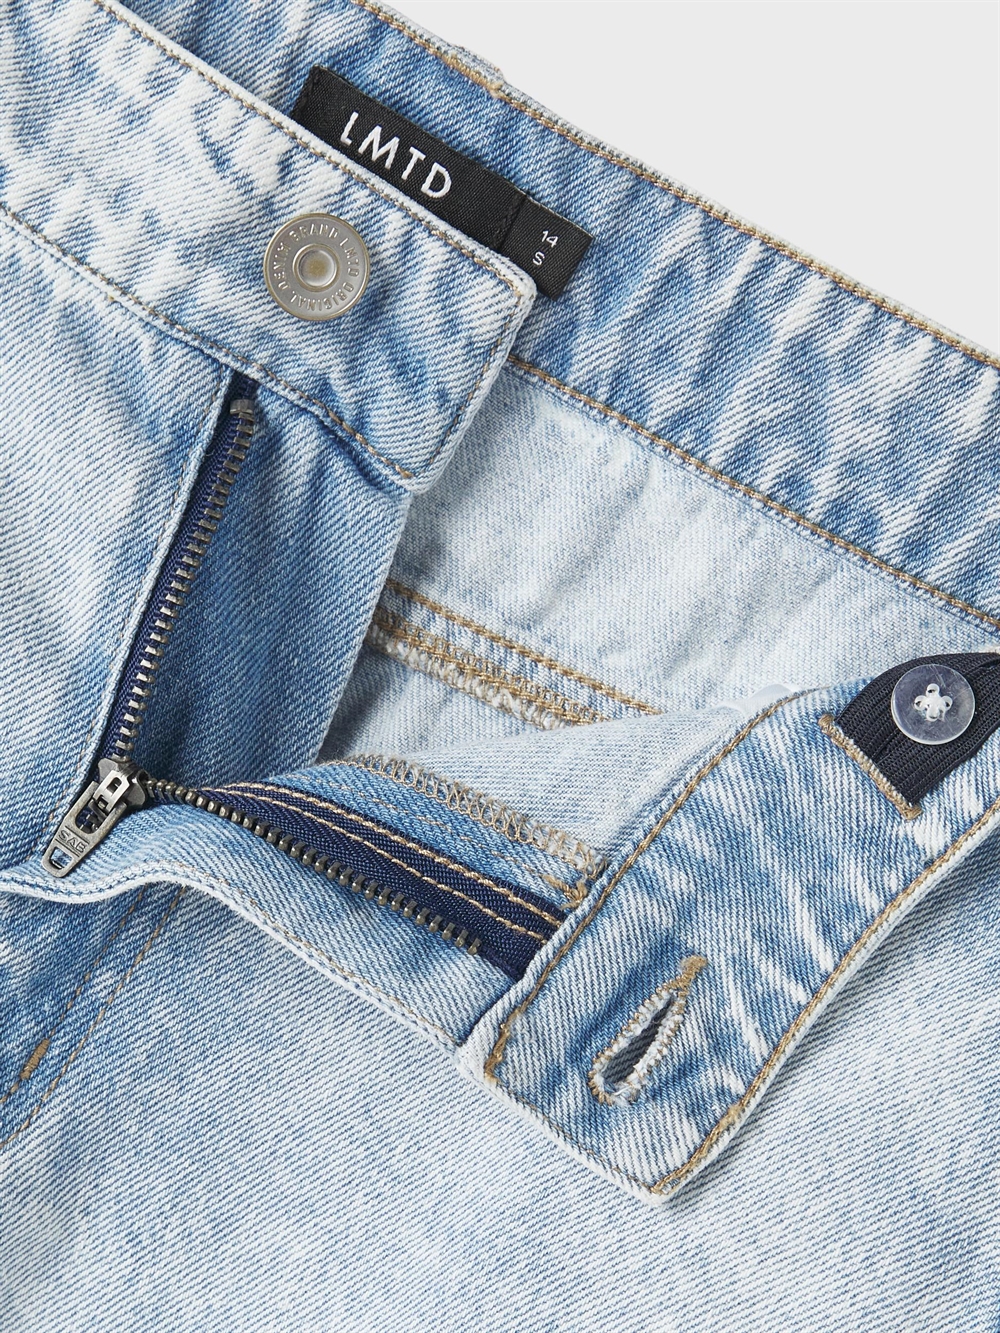 Køb disse smarte baggy pants der garanterer et cool look bevægelsesfrihed.